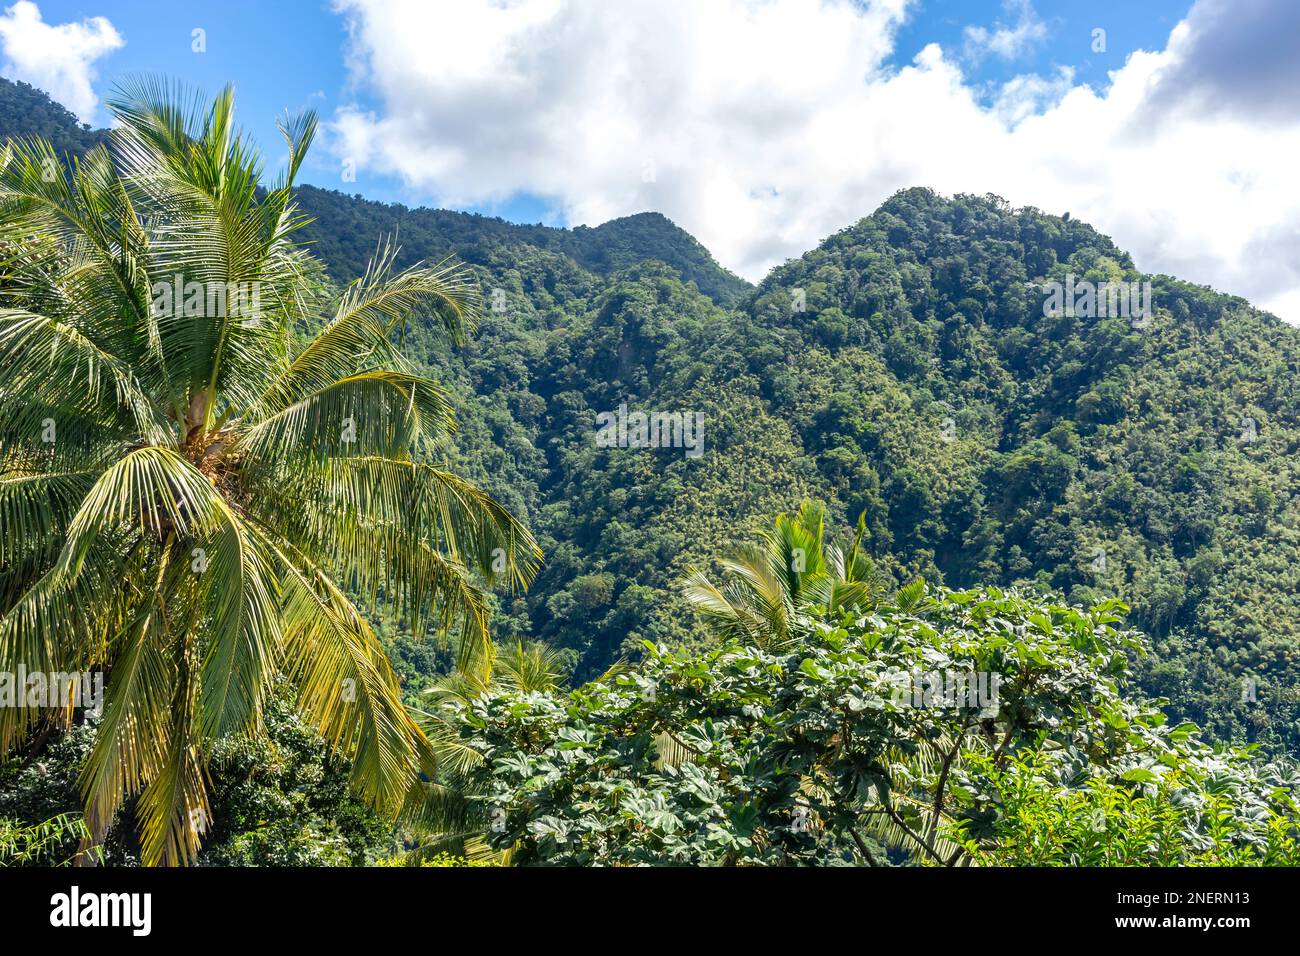 Vue sur les montagnes de la forêt tropicale, Mirador Piton Santa Lucia, Palmiste Road, Soufrière District, Sainte-Lucie, Petites Antilles, Caraïbes Banque D'Images